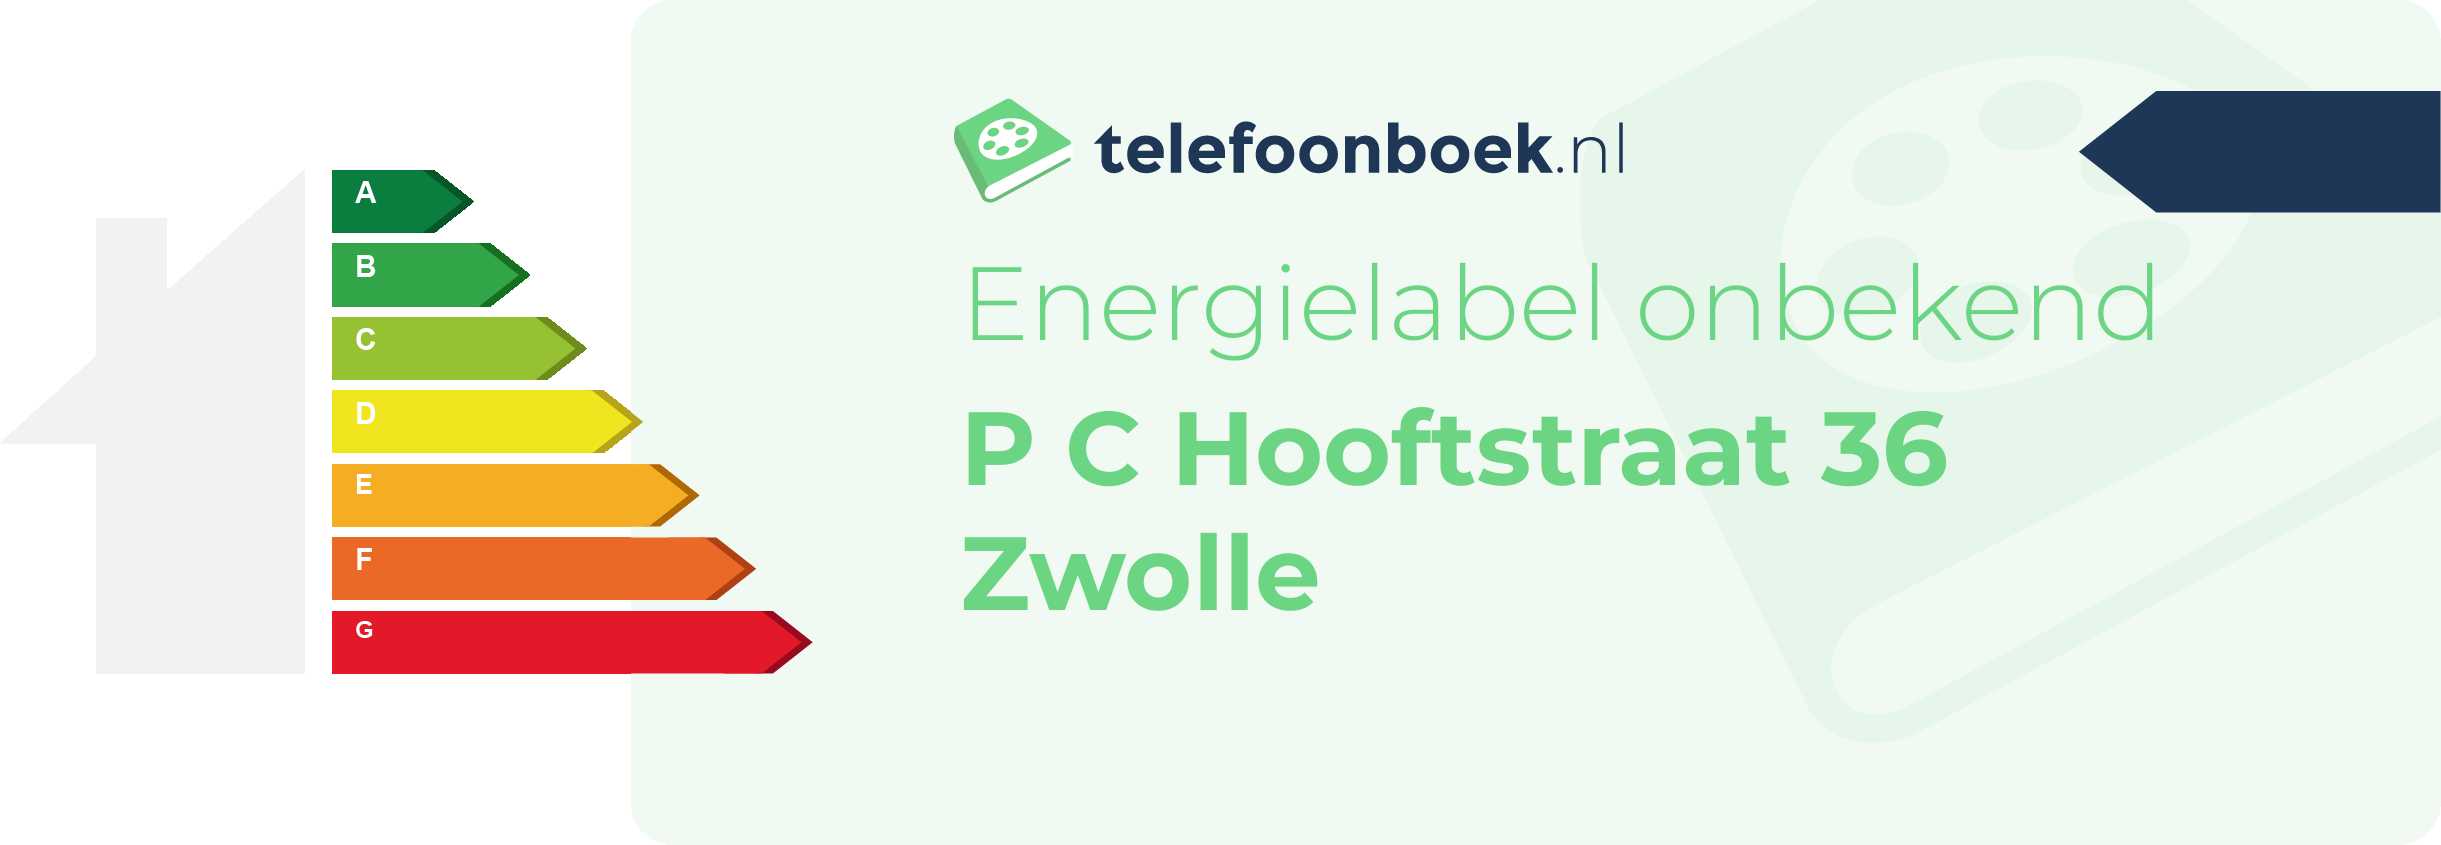 Energielabel P C Hooftstraat 36 Zwolle